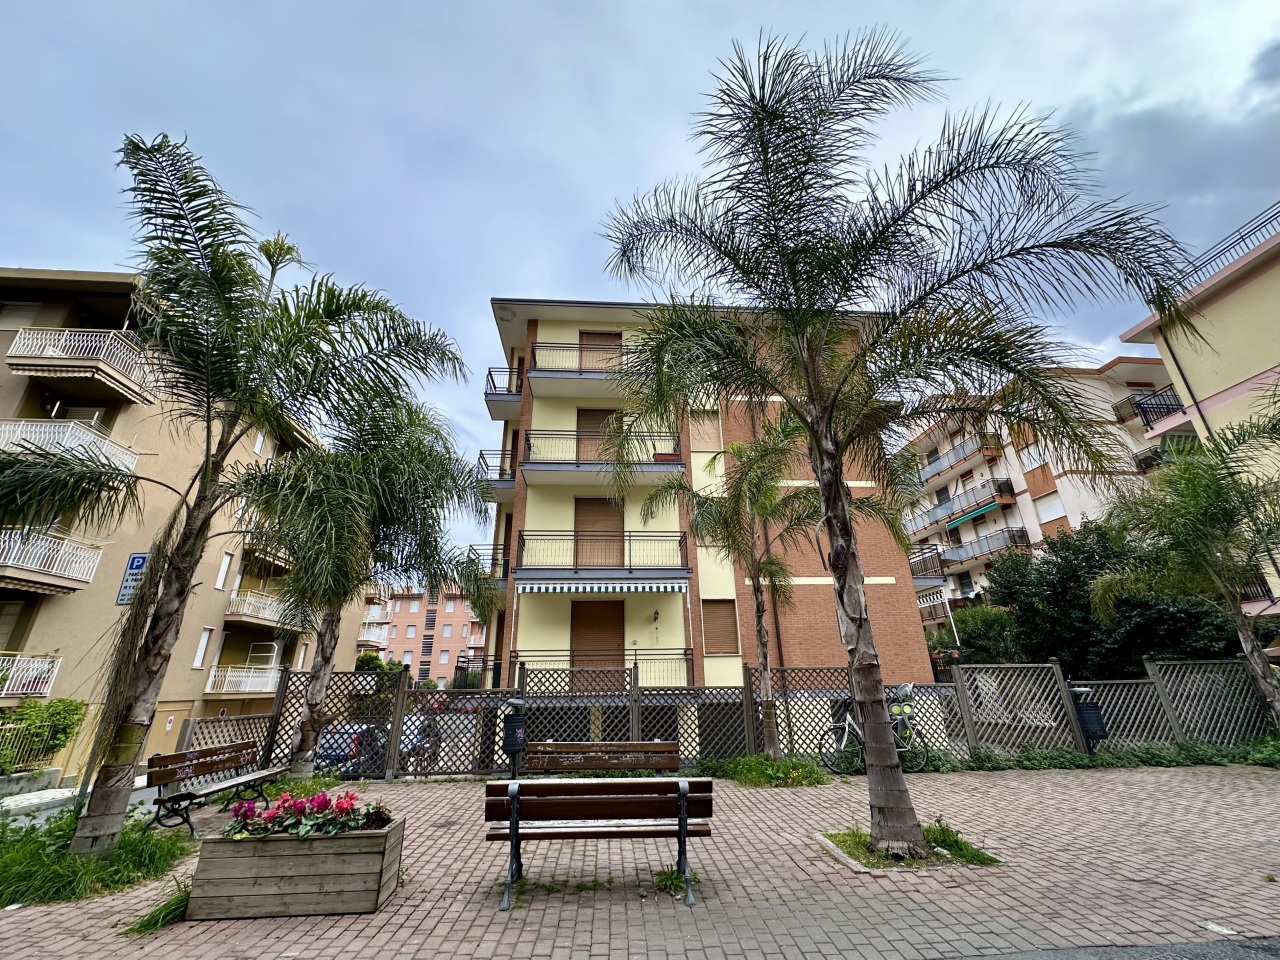 Appartamento in vendita a San Bartolomeo al Mare, 2 locali, prezzo € 250.000 | PortaleAgenzieImmobiliari.it